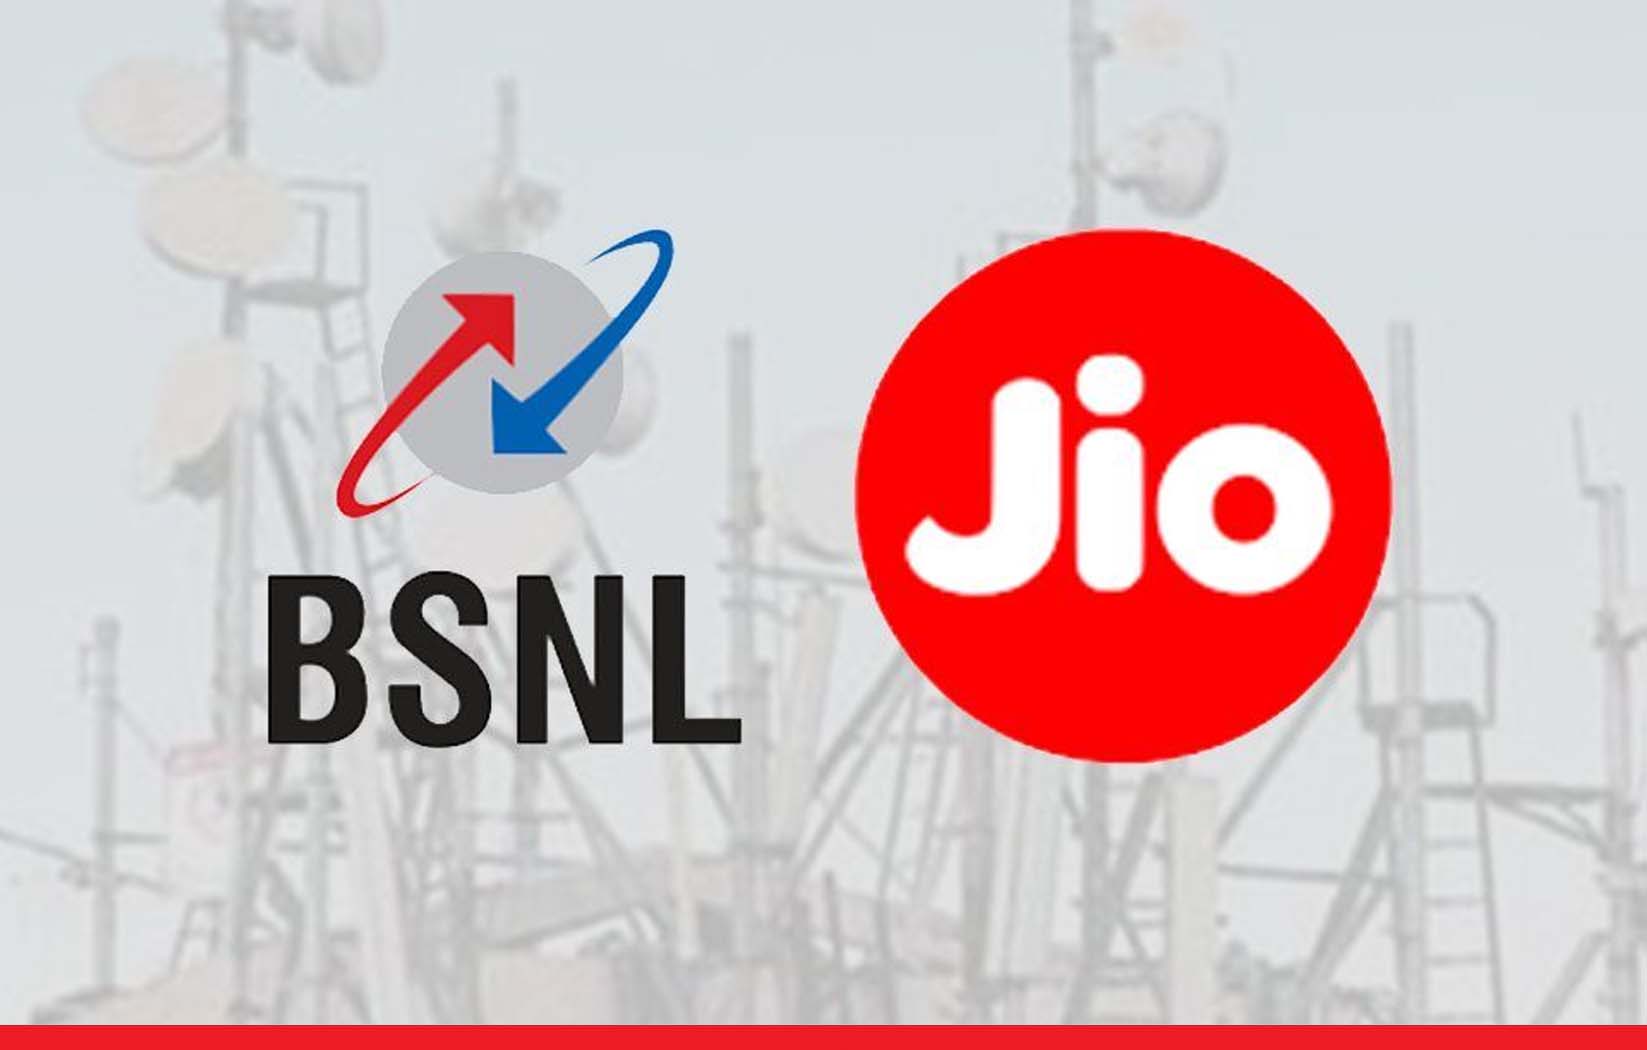 BSNL को पछाड़ कर आगे निकली Jio, लैंडलाइन की बनी सबसे बड़ी कंपनी